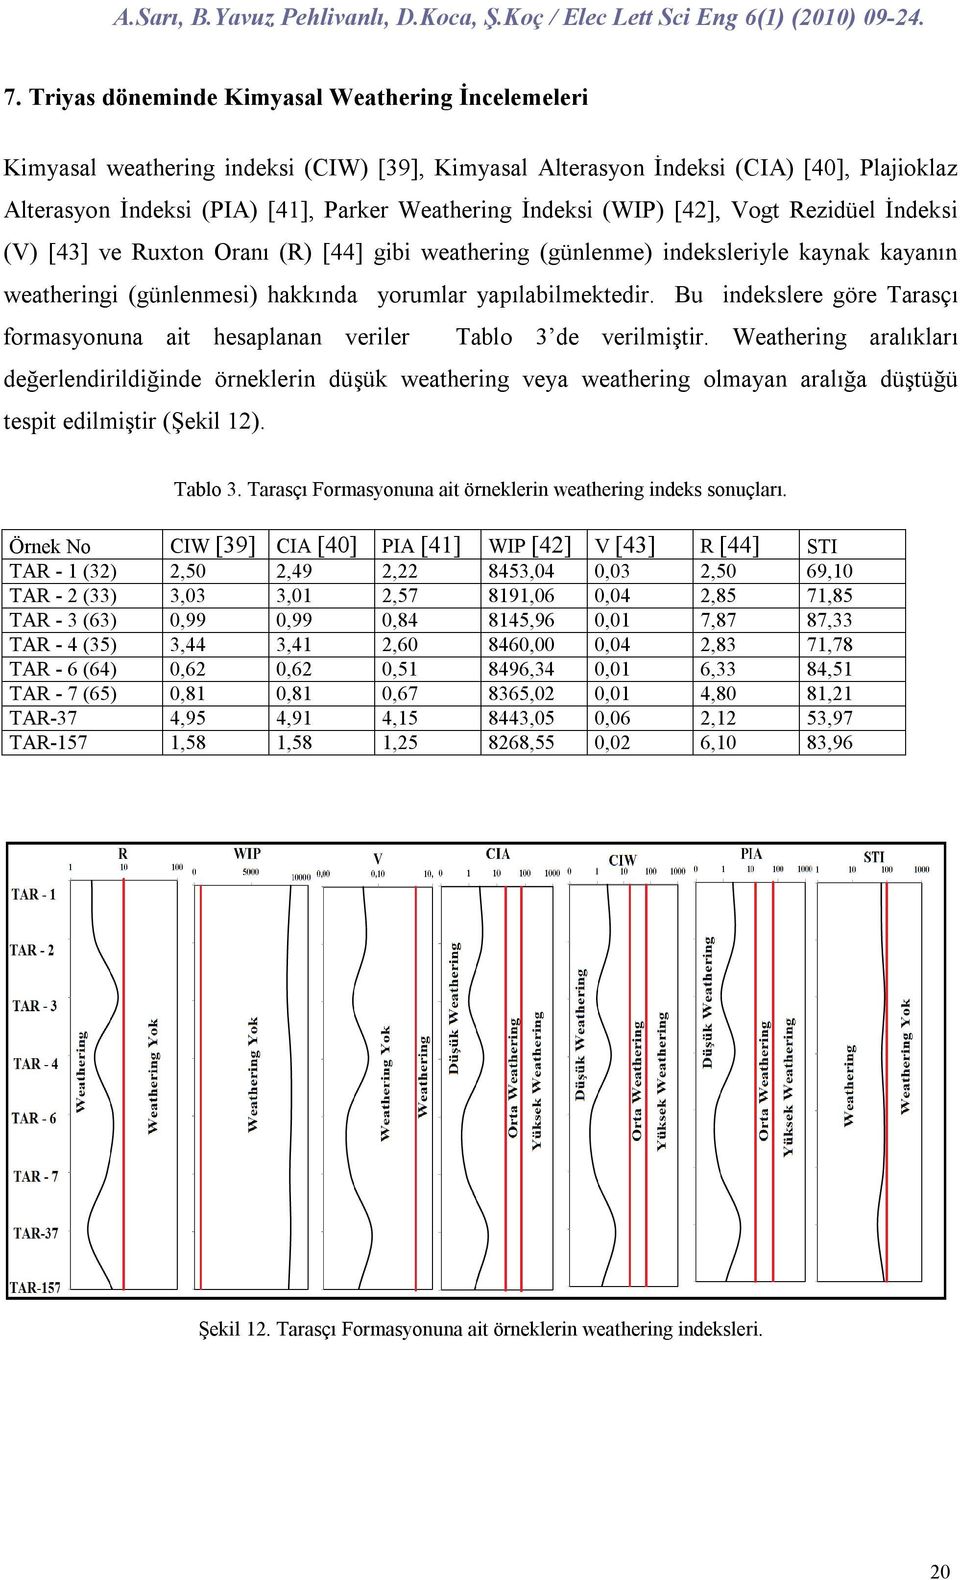 Bu indekslere göre Tarasçı formasyonuna ait hesaplanan veriler Tablo 3 de verilmiştir.